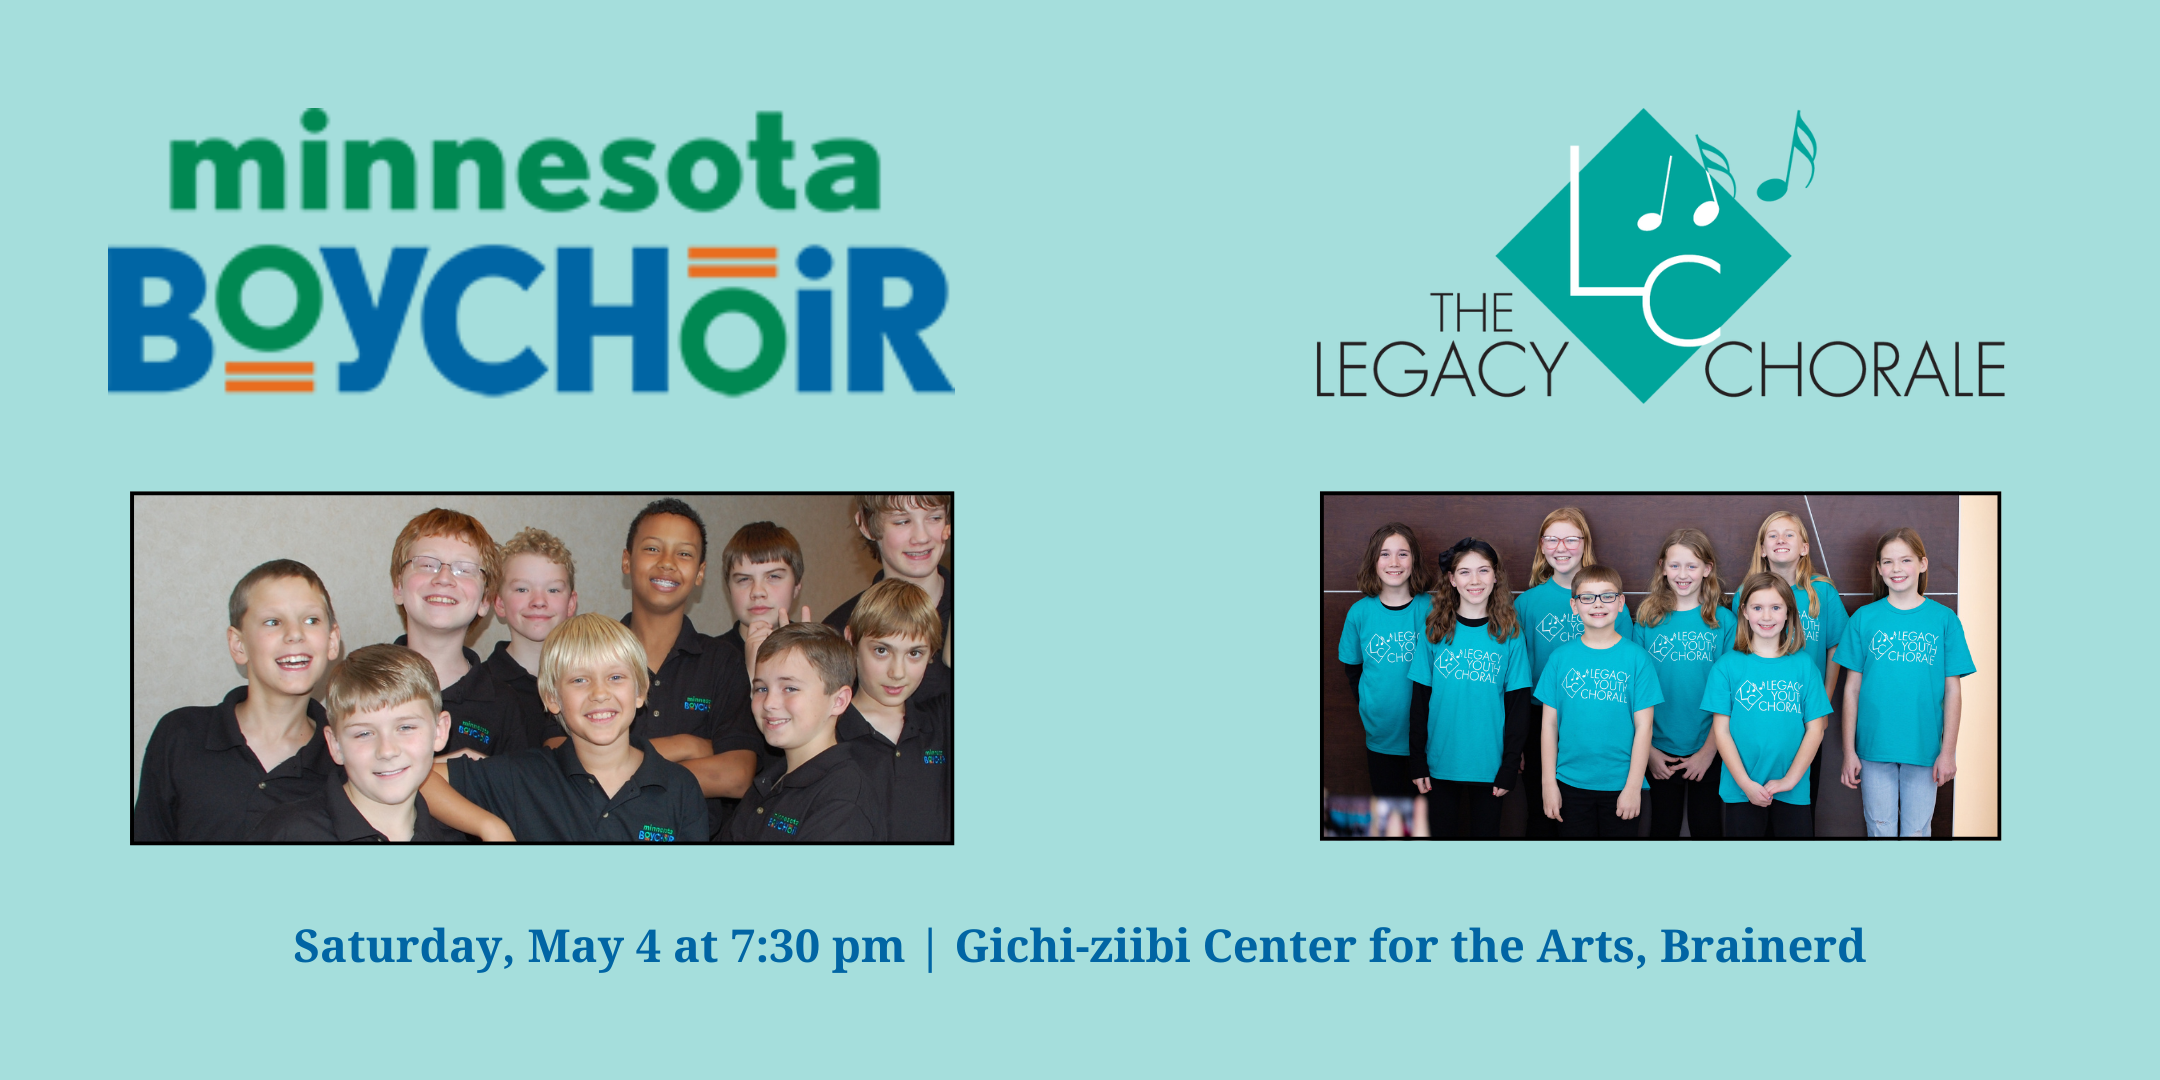 Minnesota Boychoir and Legacy Youth Chorale